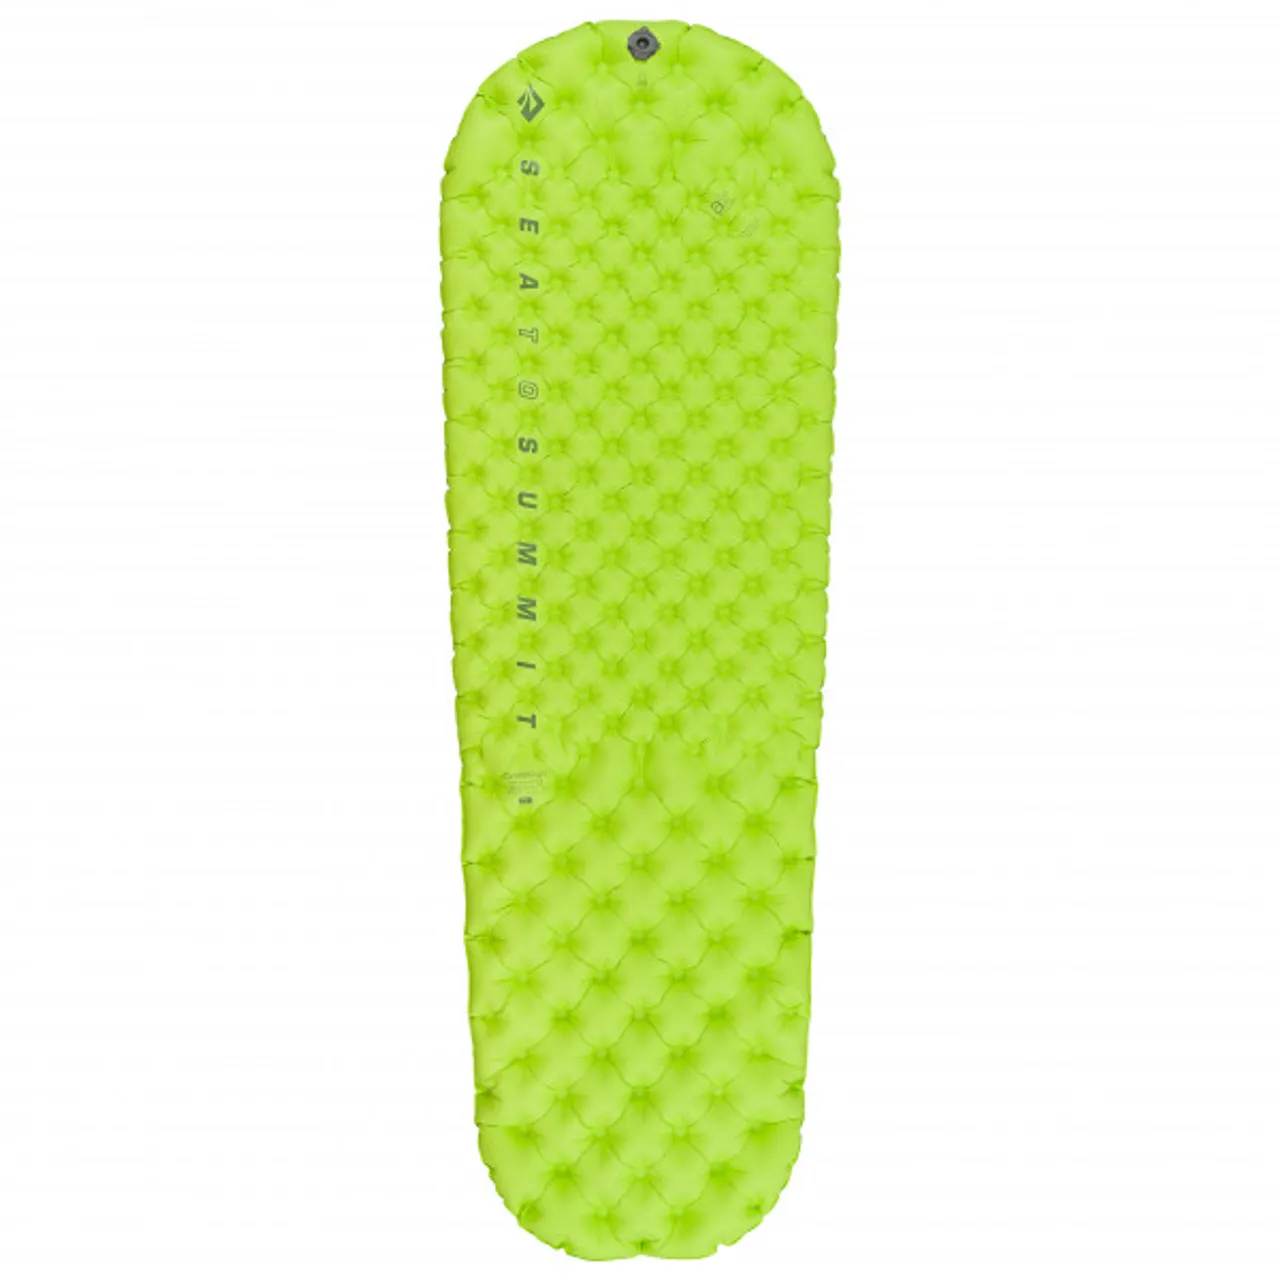 Sea to Summit - Comfort Light Insulated Mat - Sleeping mat size Regular, green